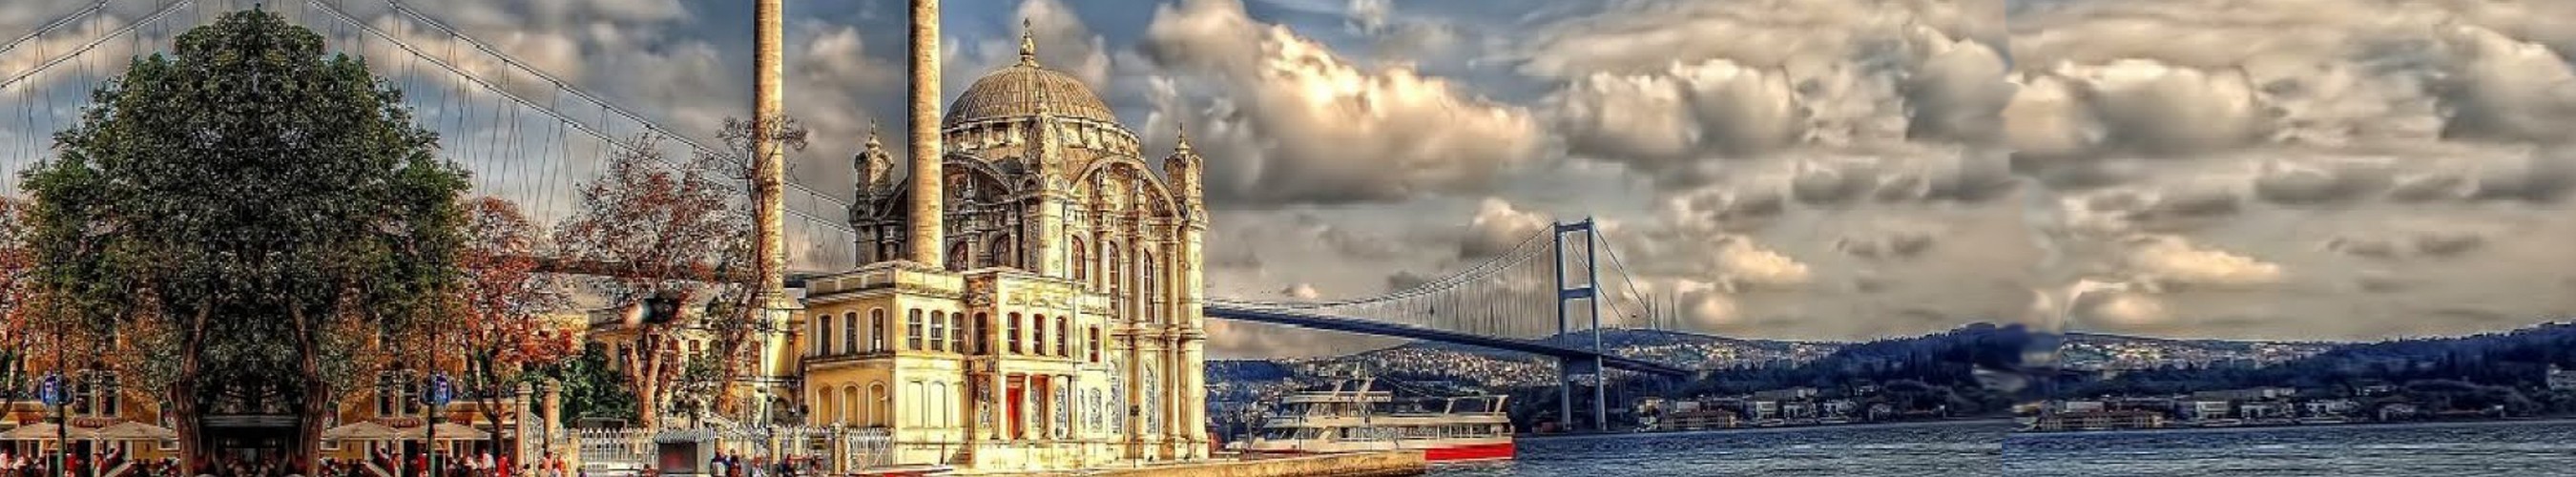 مدينة أسطنبول السياحية صور لم تشاهدها من قبل  Cb8d27a25c006ef69a23f0c70a6aeb67